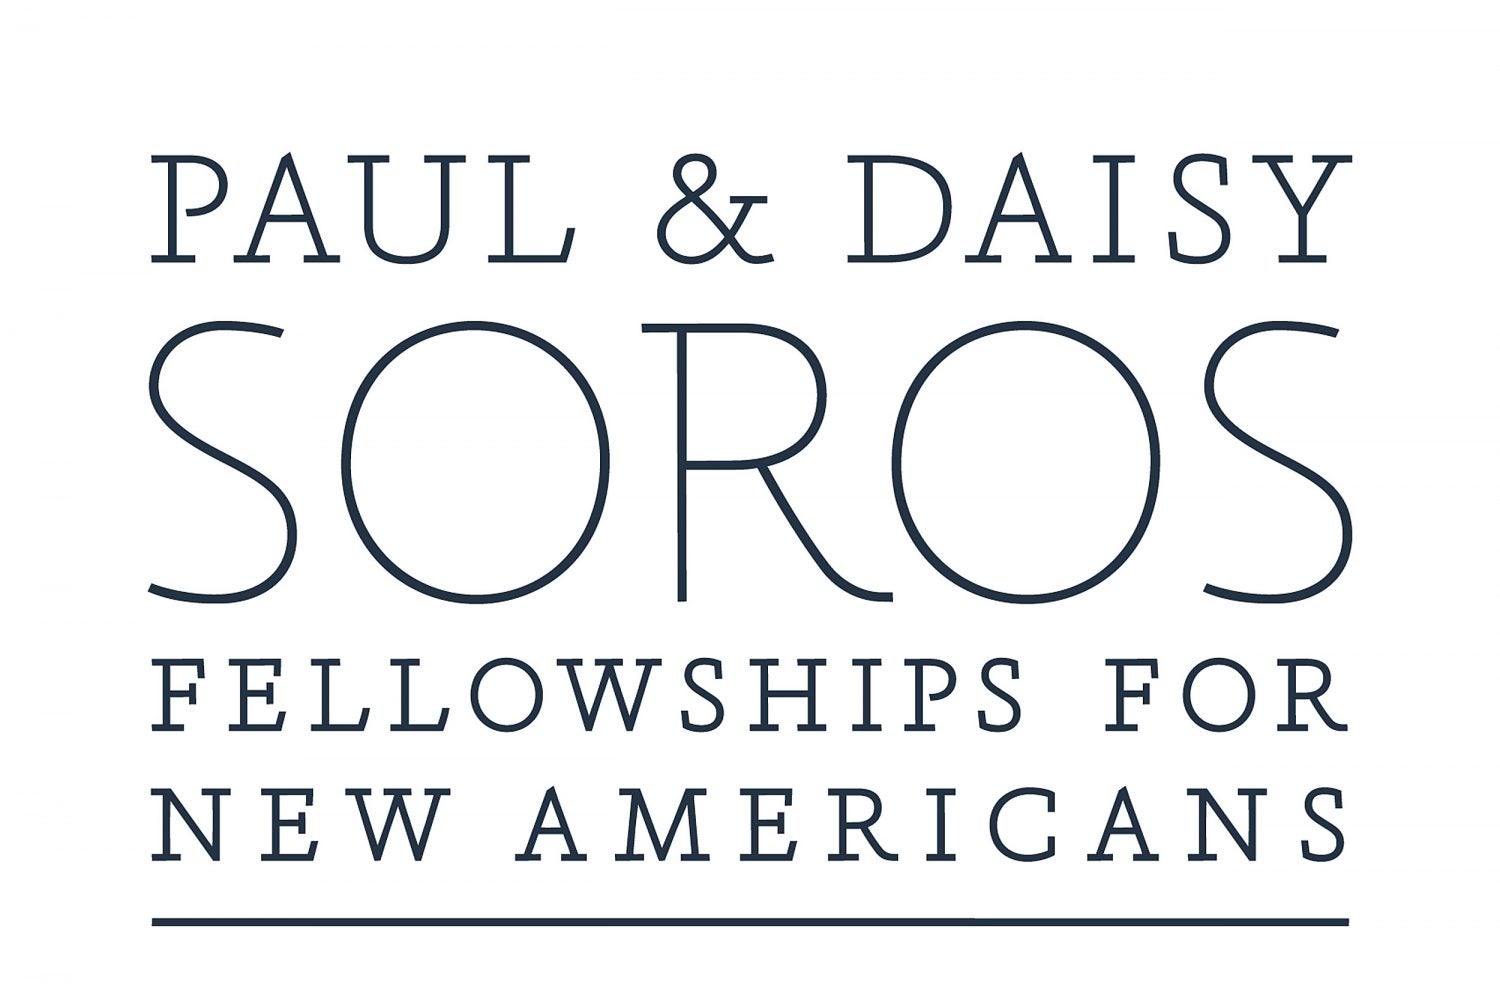 Quenton Bubb named Paul & Daisy Soros Fellow